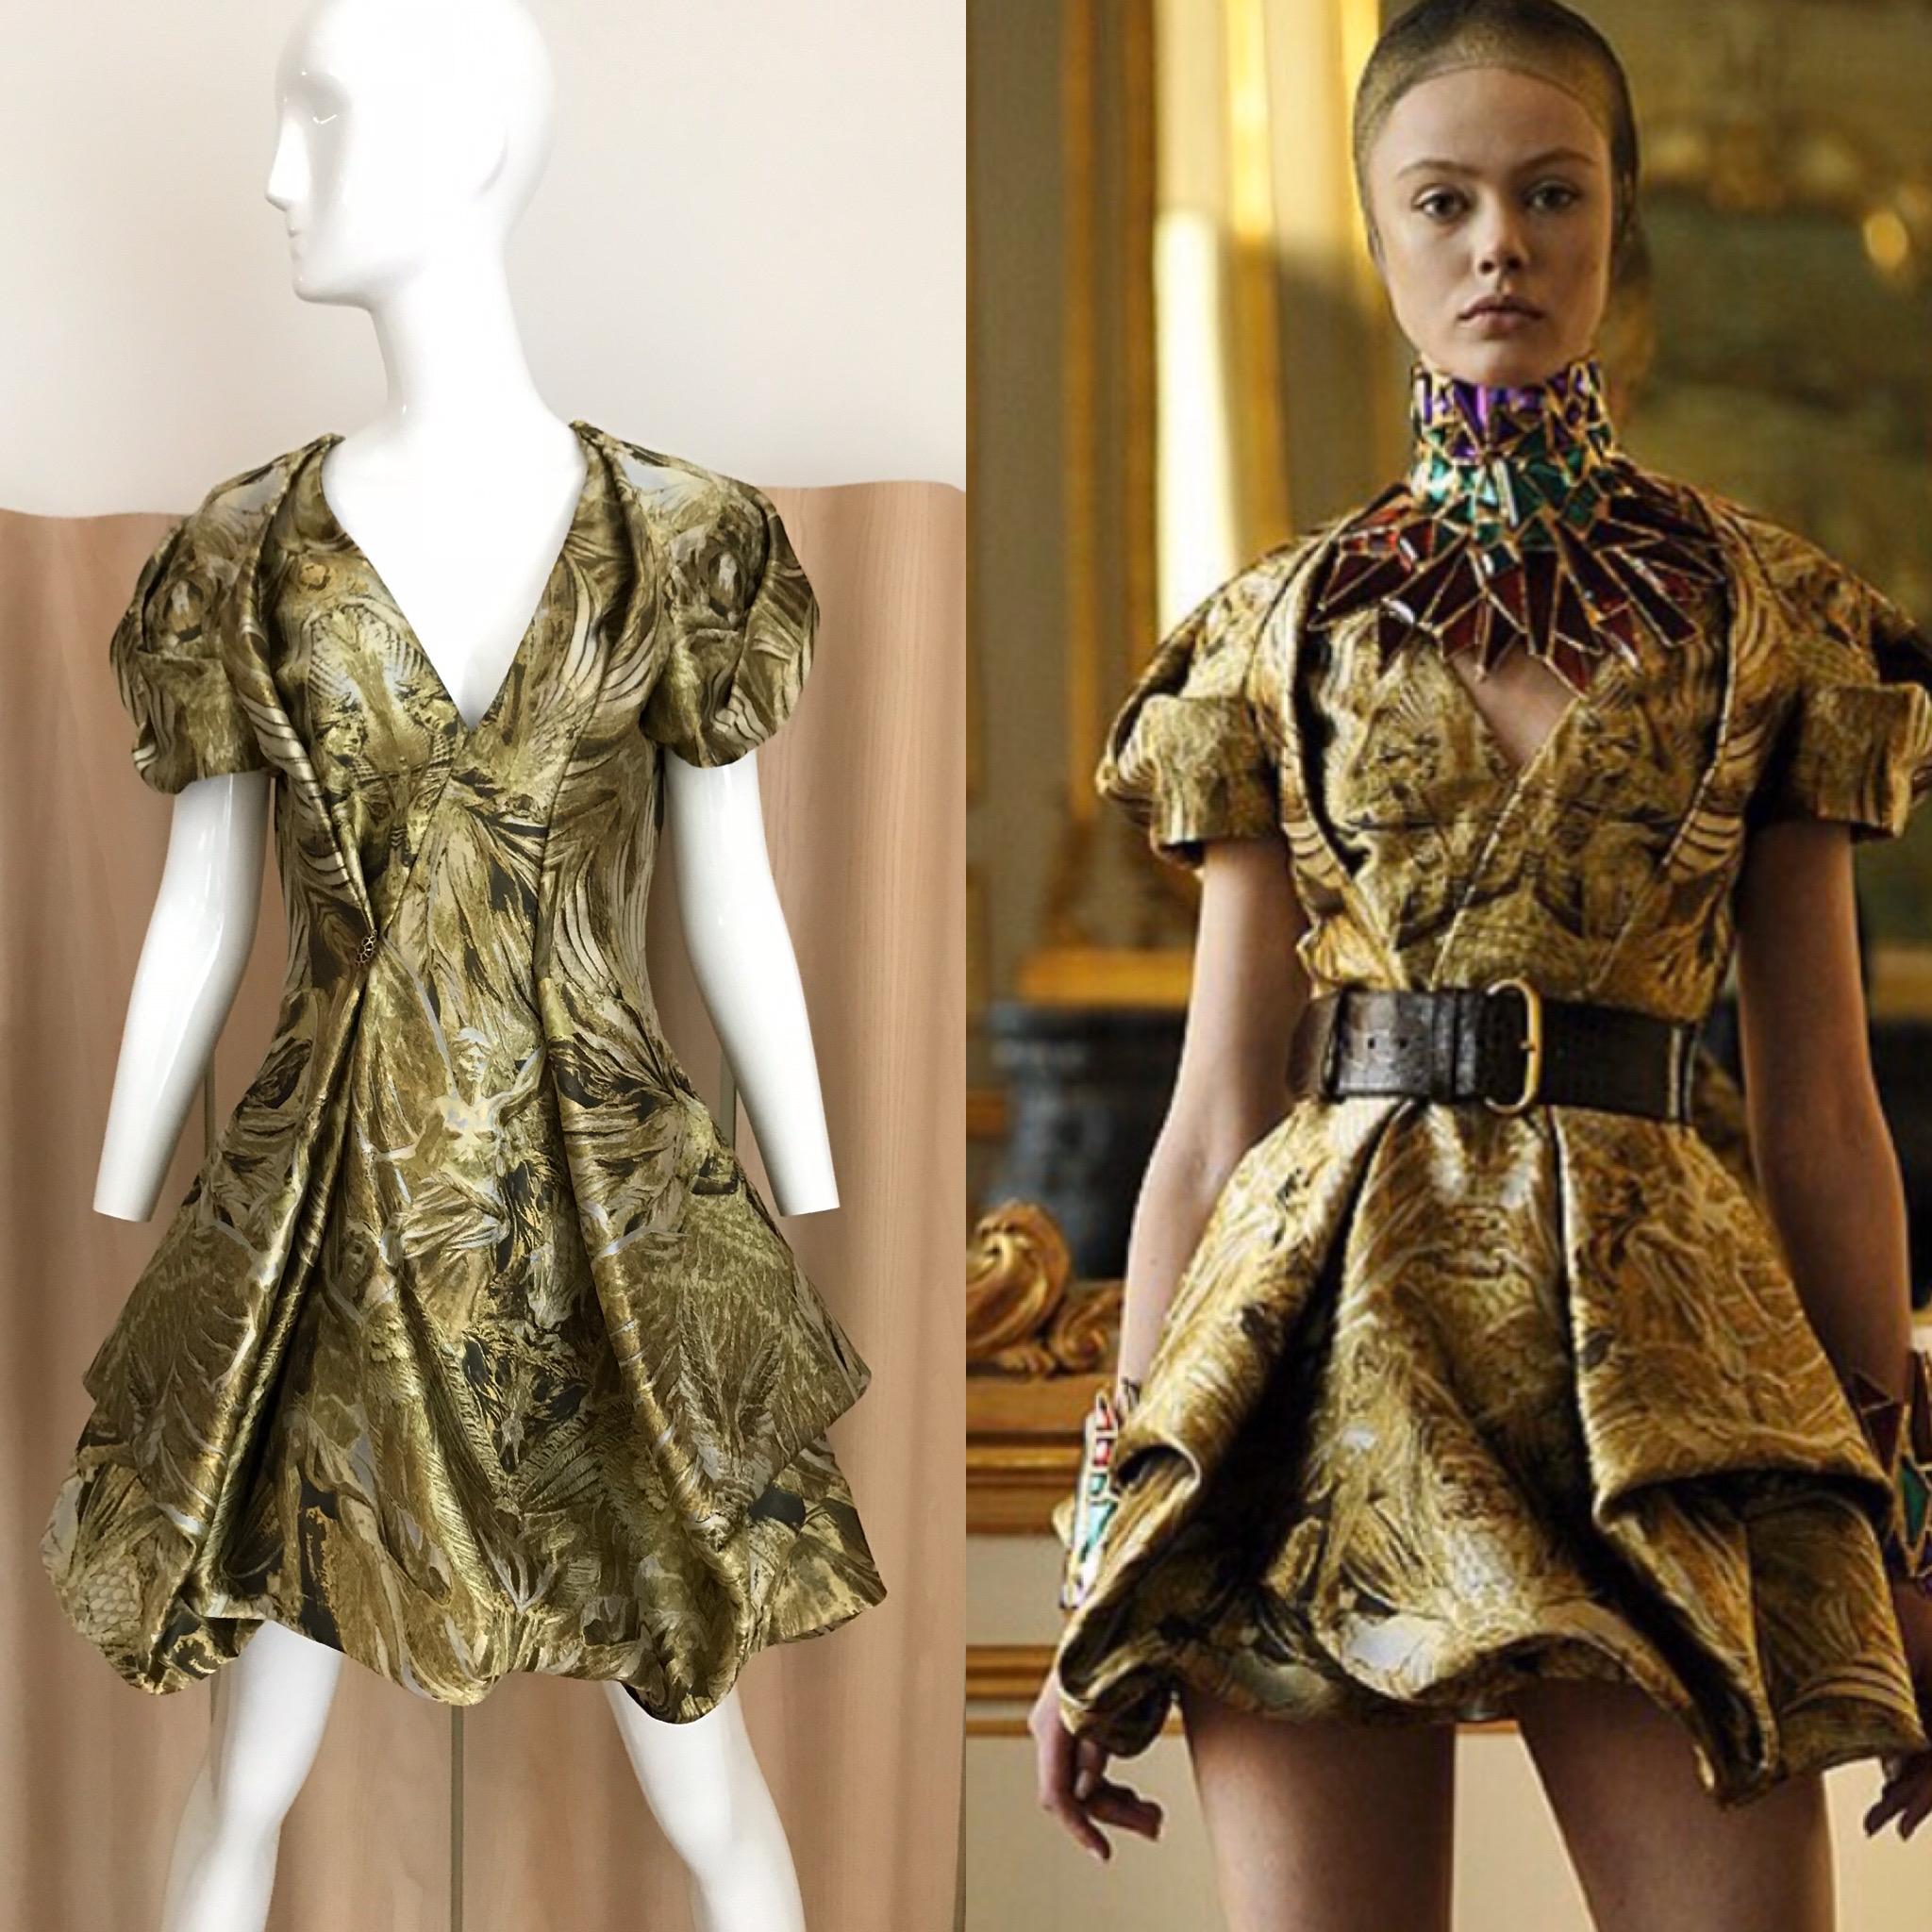 Women's Alexander McQueen Gold Metallic Dress from 2010 